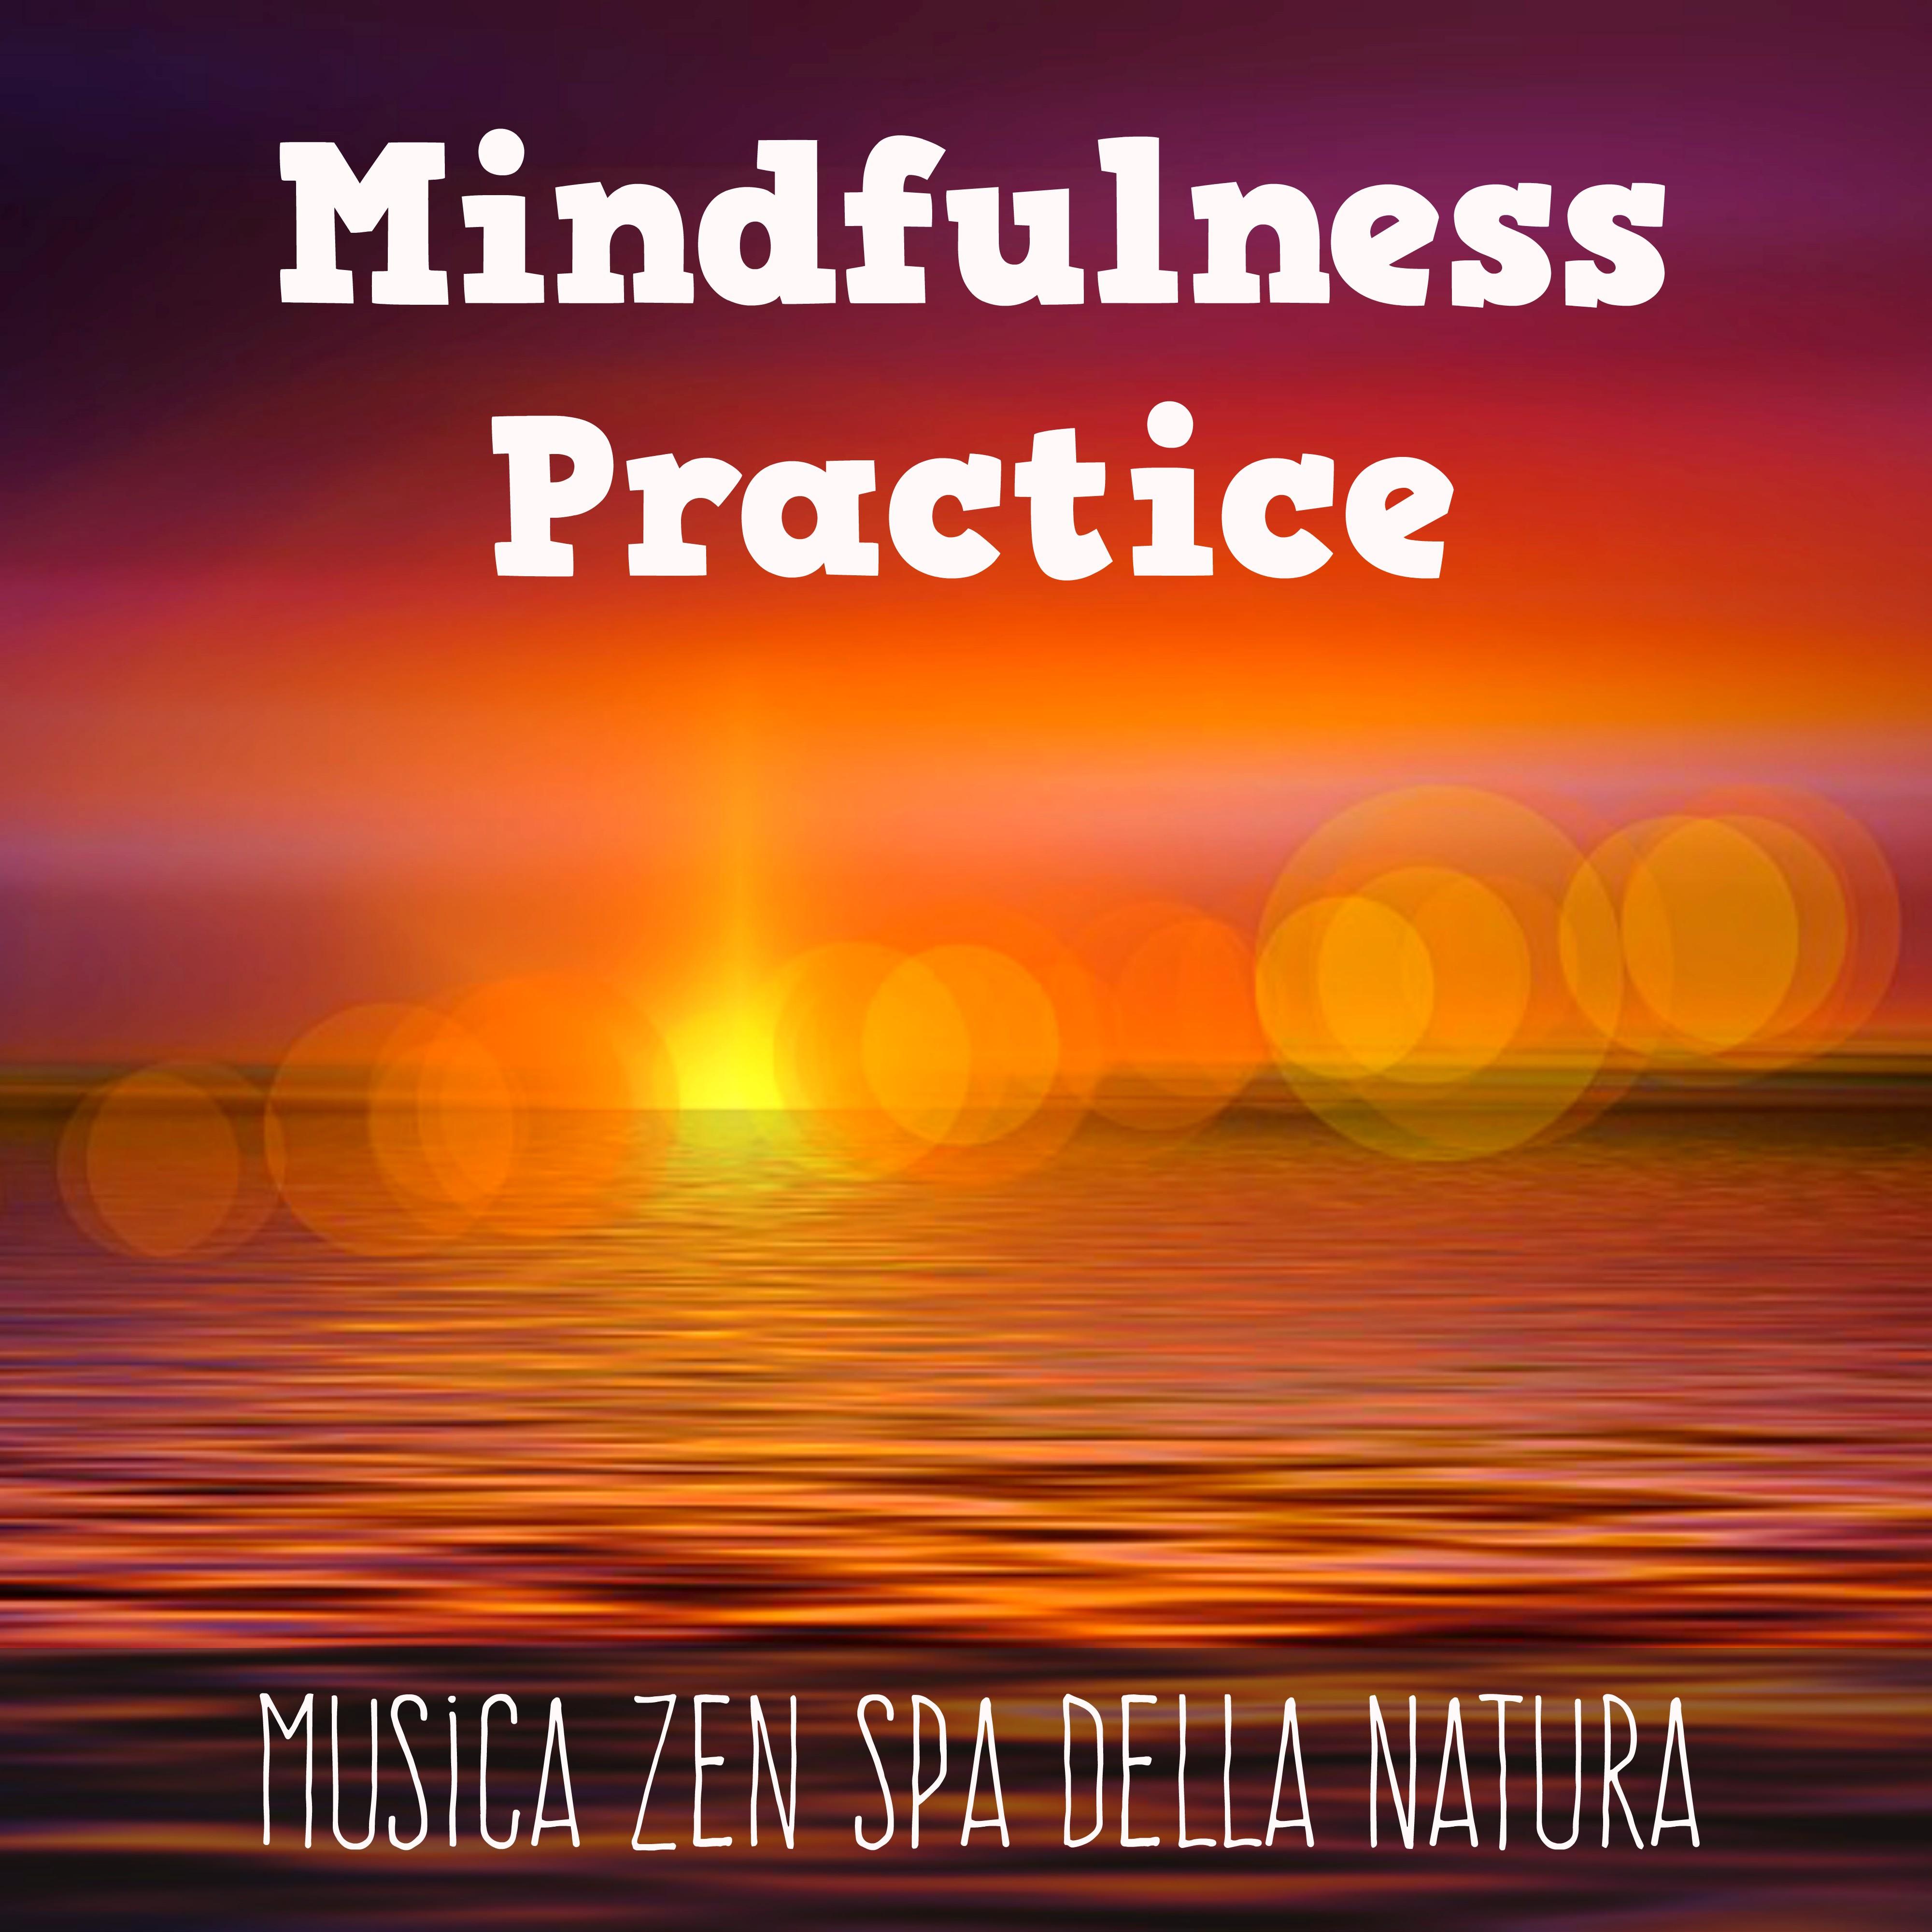 Mindfulness Practice - Musica Zen Spa della Natura per Sonno Profondo Benessere Psicofisico Calma Interiore con Suoni Rilassanti New Age Spirituali